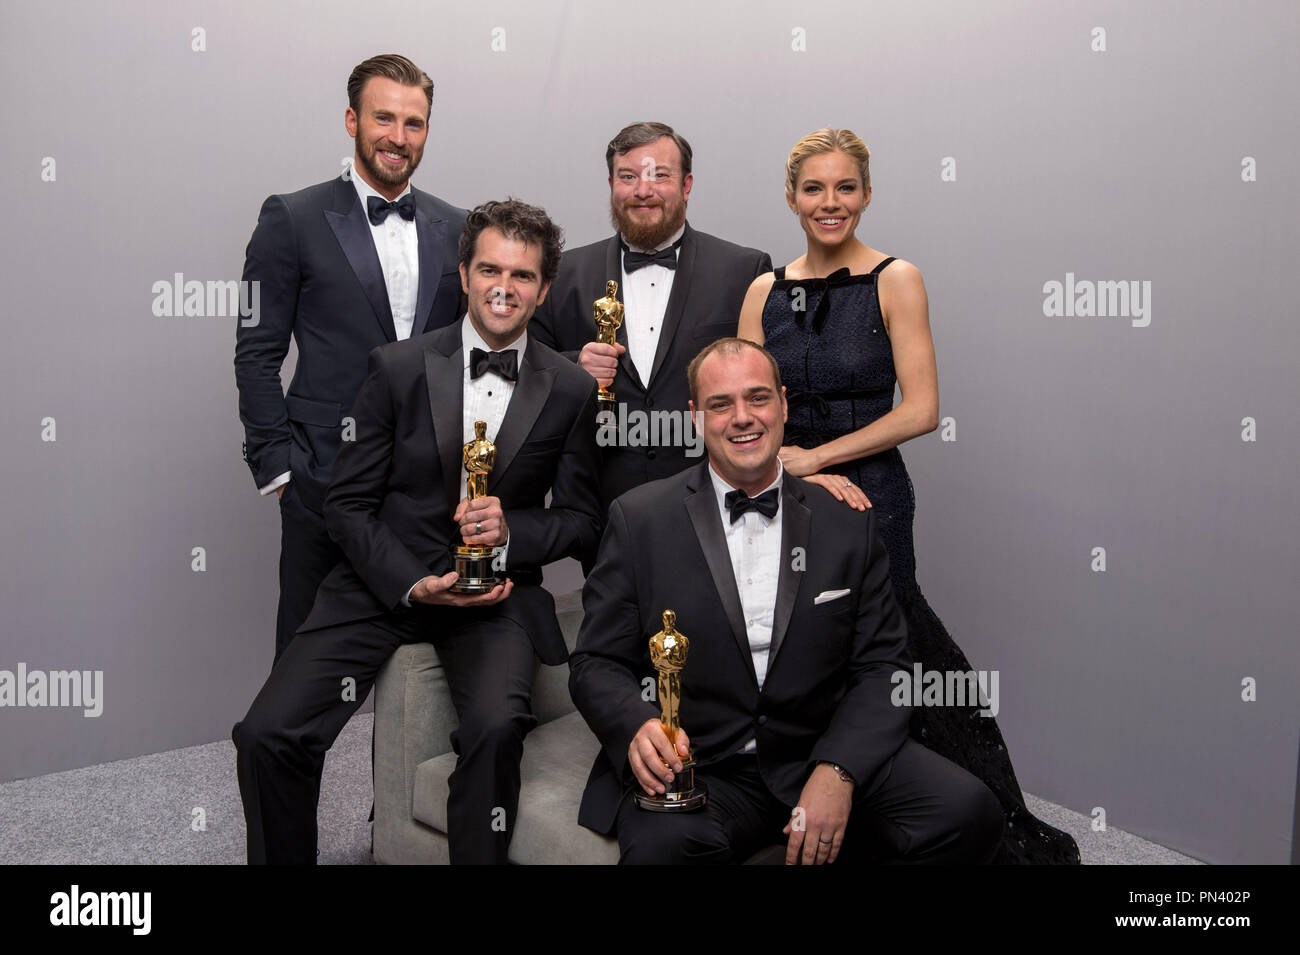 Craig Mann, Ben Wilkins, e Thomas Curley, vincitori di suono miscelazione  per colpo di frusta, pone backstage con loro Oscar durante la 87th Academy  Awards a Hollywood & Highland Center di Los